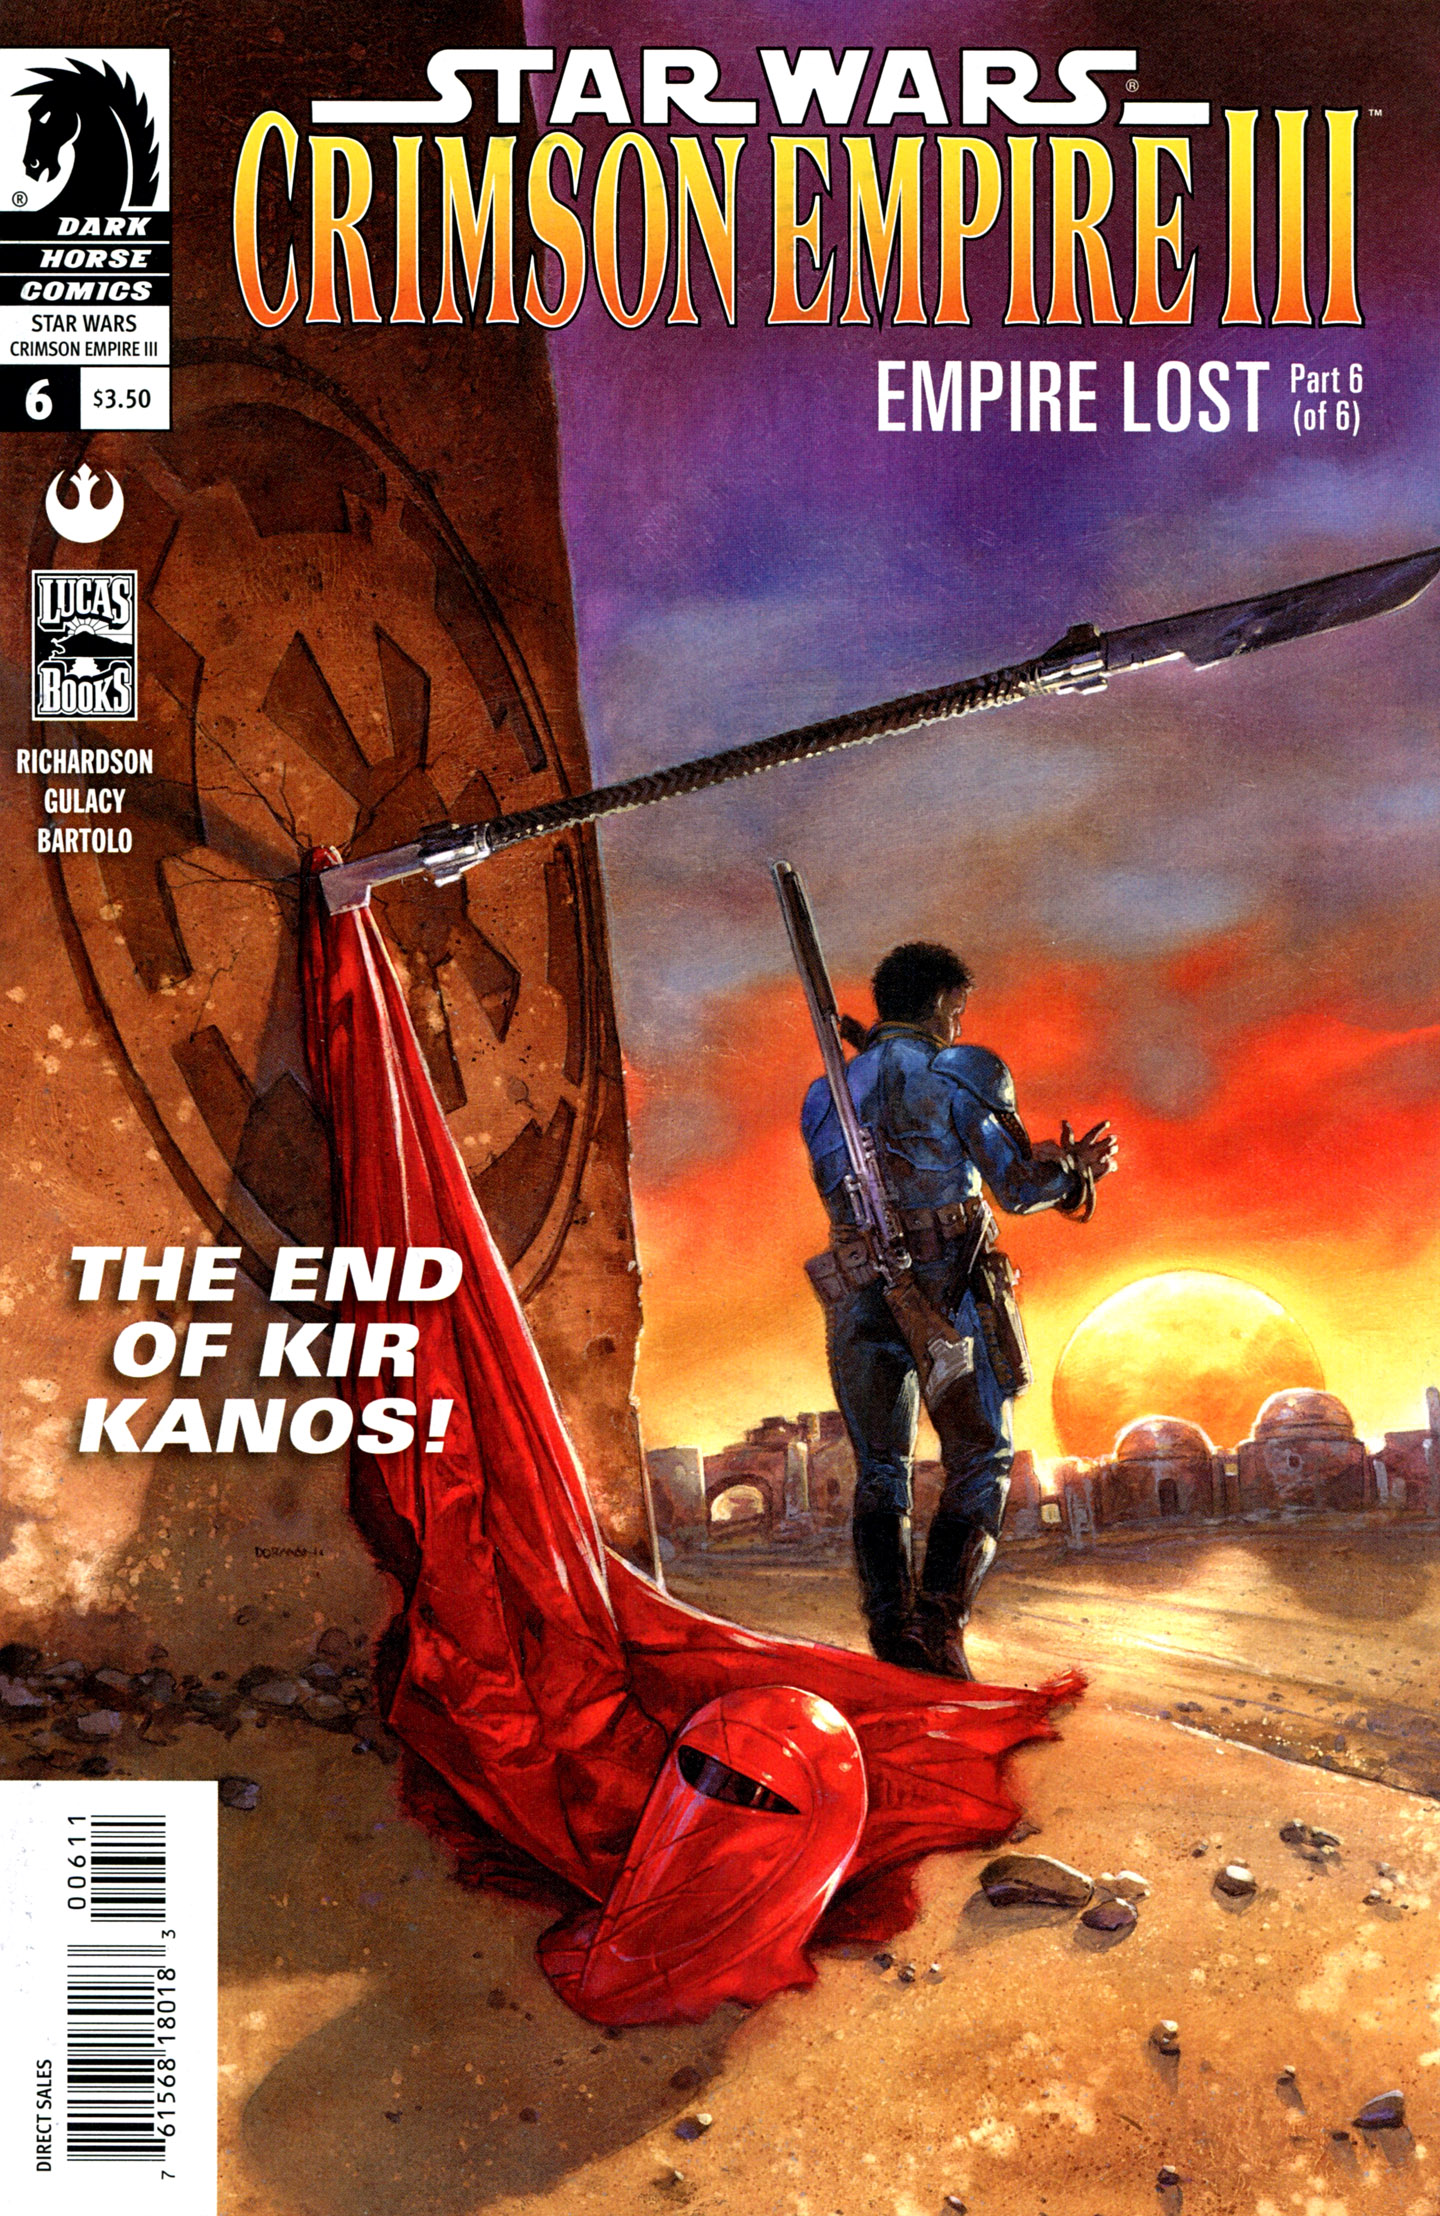 Star Wars: Crimson Empire III - Empire Lost issue 6 - Page 1